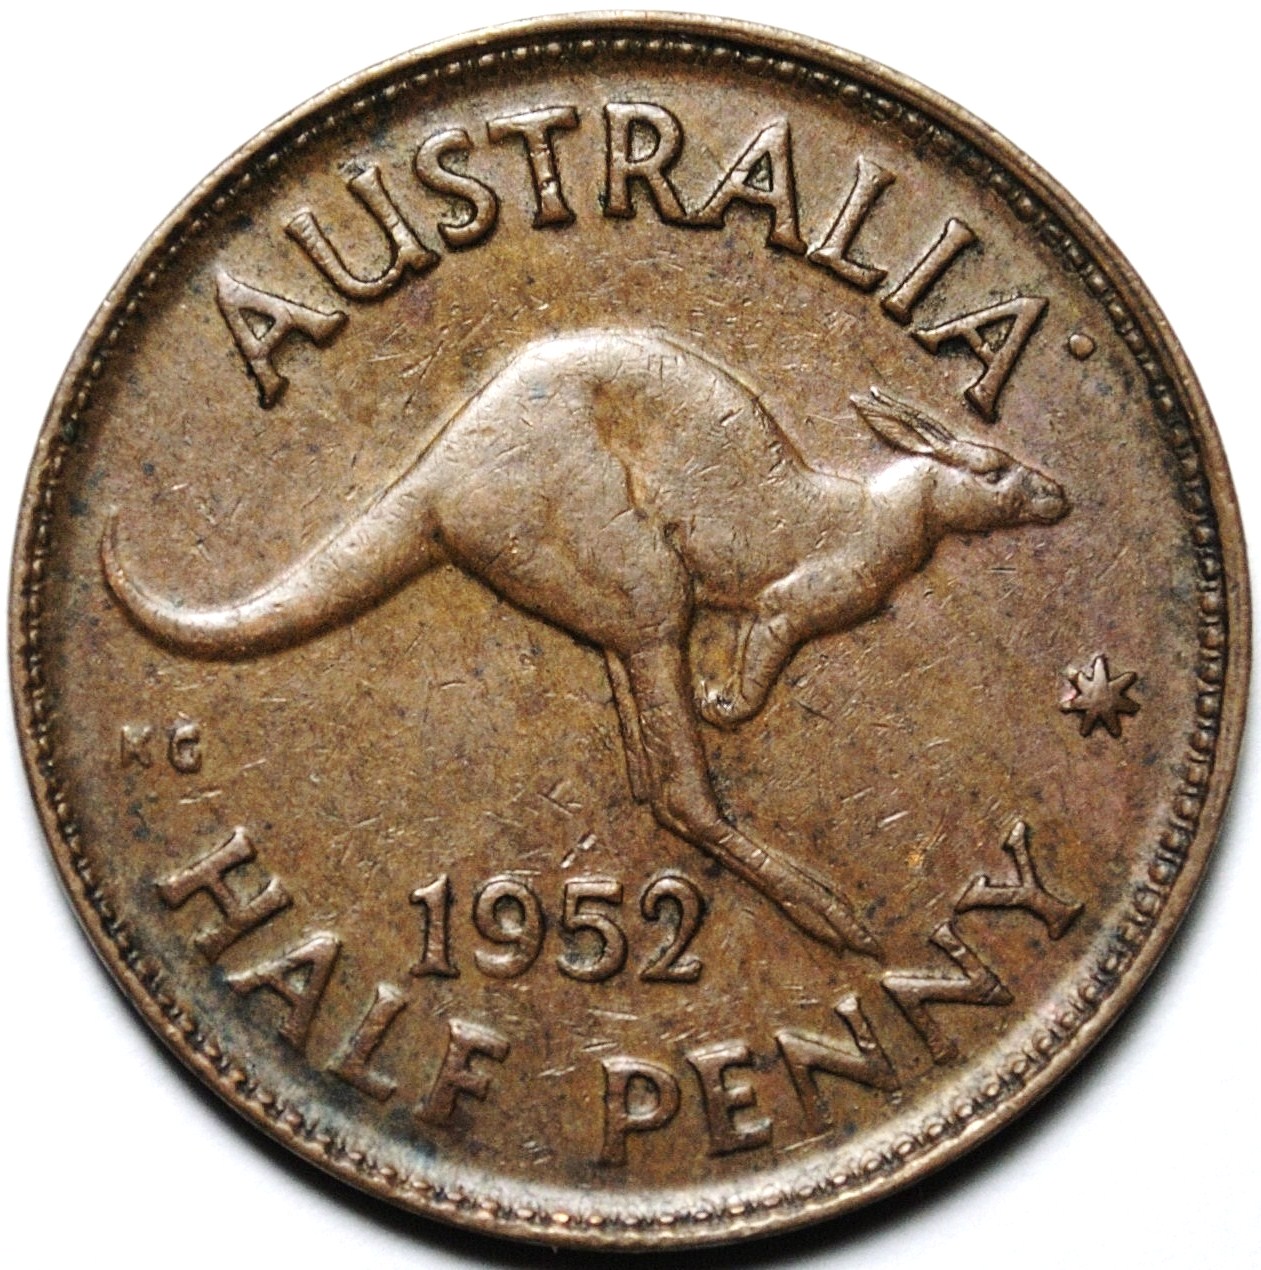 1952 Australian halfpenny reverse